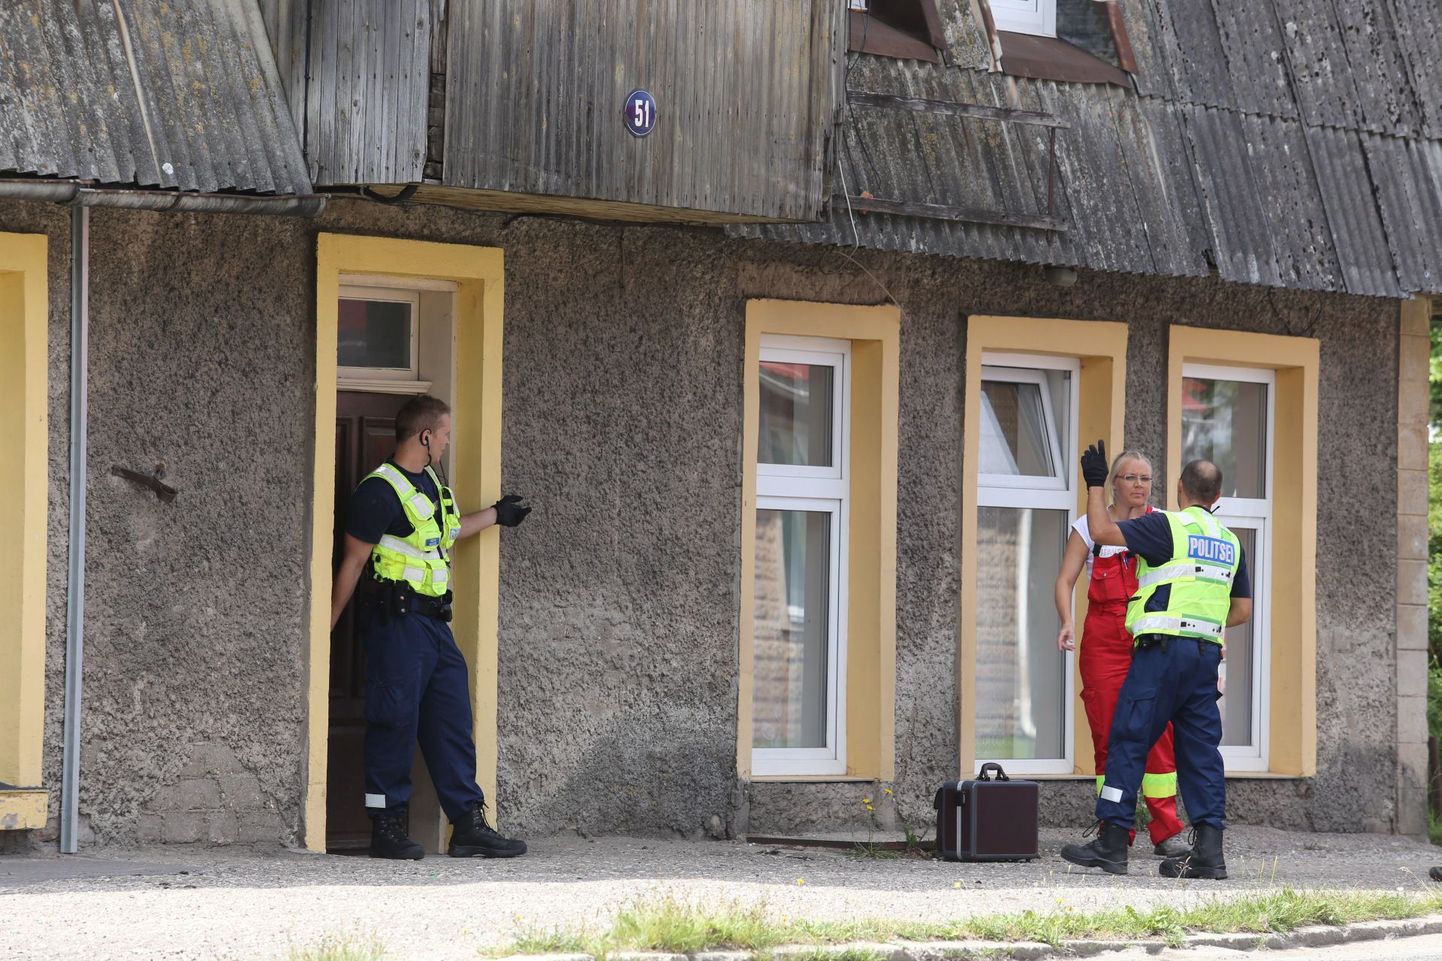 Pantvangikriis Tallinna tänaval on lõppenud, sest pereisa lasi lapse majast välja, kuid mees ise pole veel alla andnud.